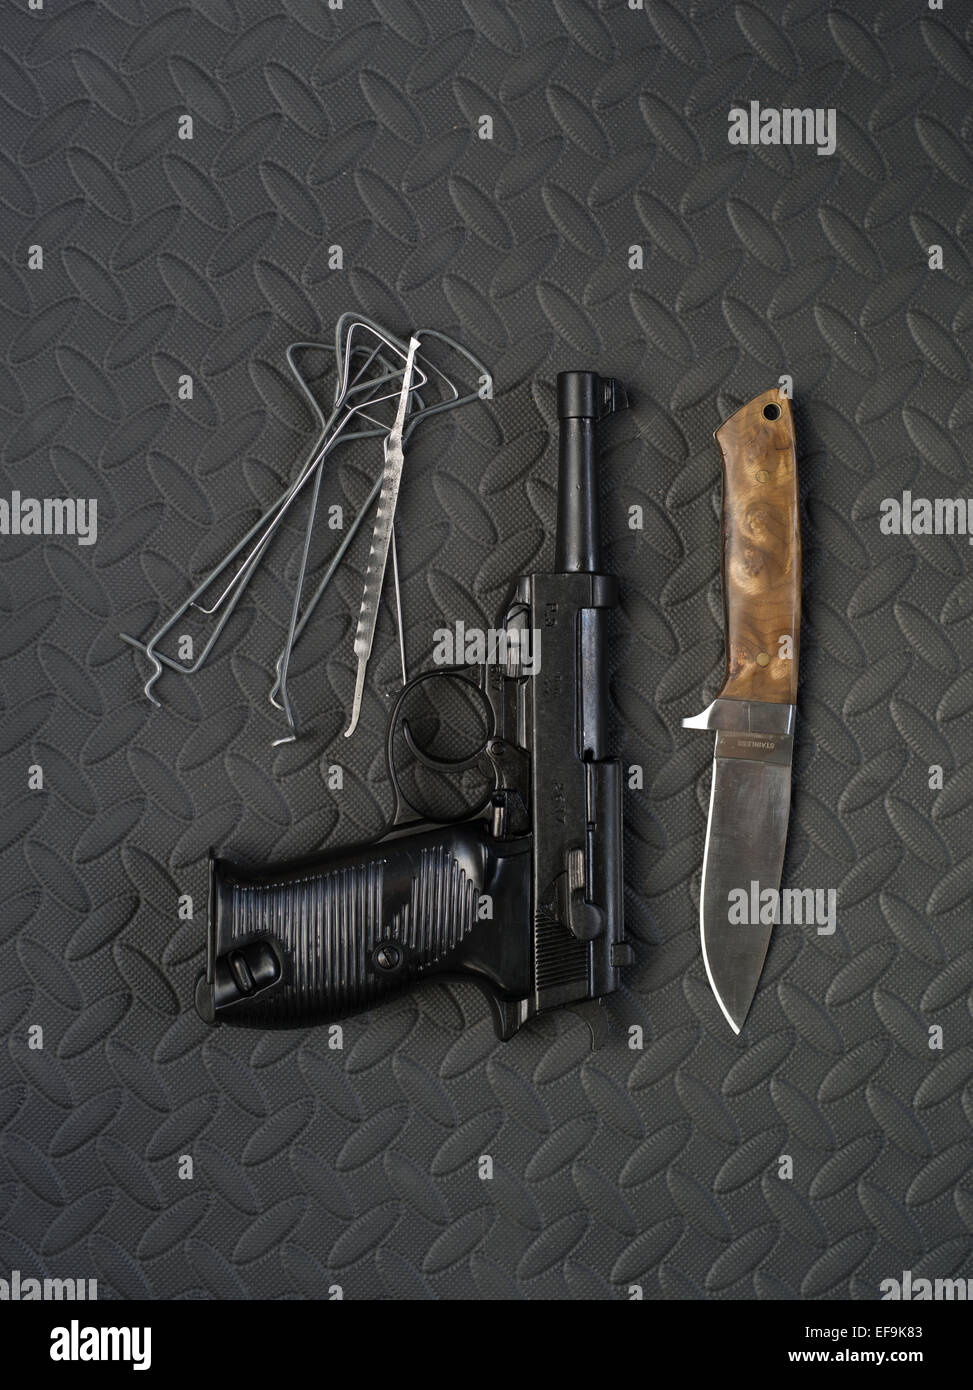 Walther P38 und Messer und Lock picks Stockfotografie - Alamy